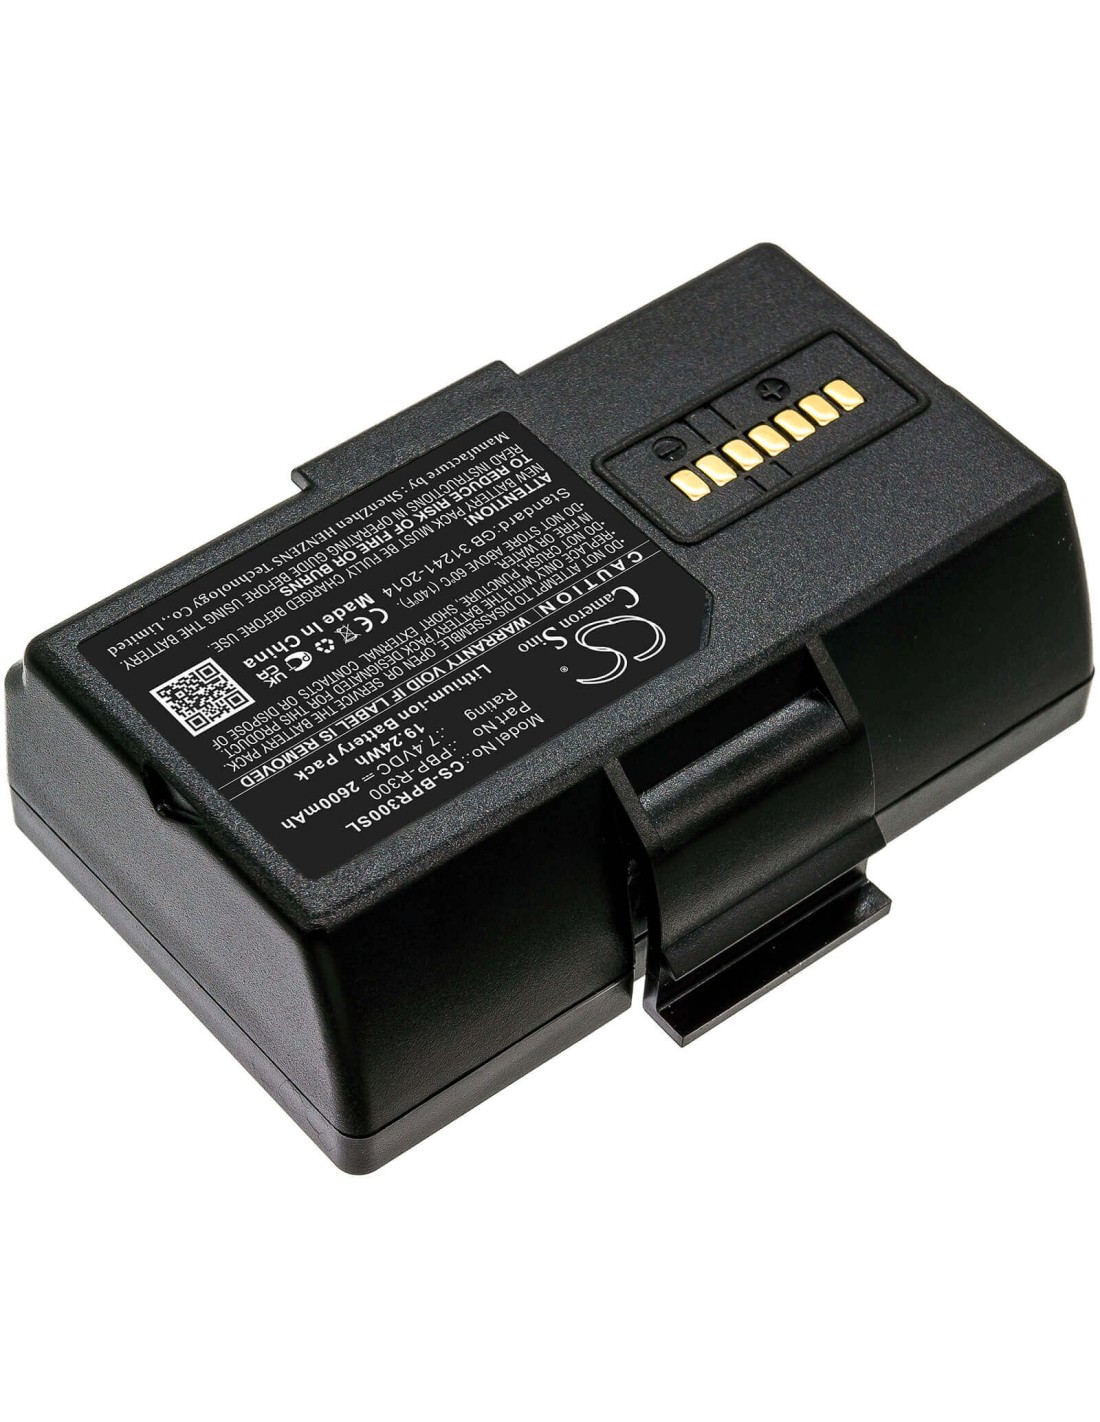 Battery for Bixolon, Spp-r300, Spp-r310, Spp-r318 7.4V, 2600mAh - 19.24Wh